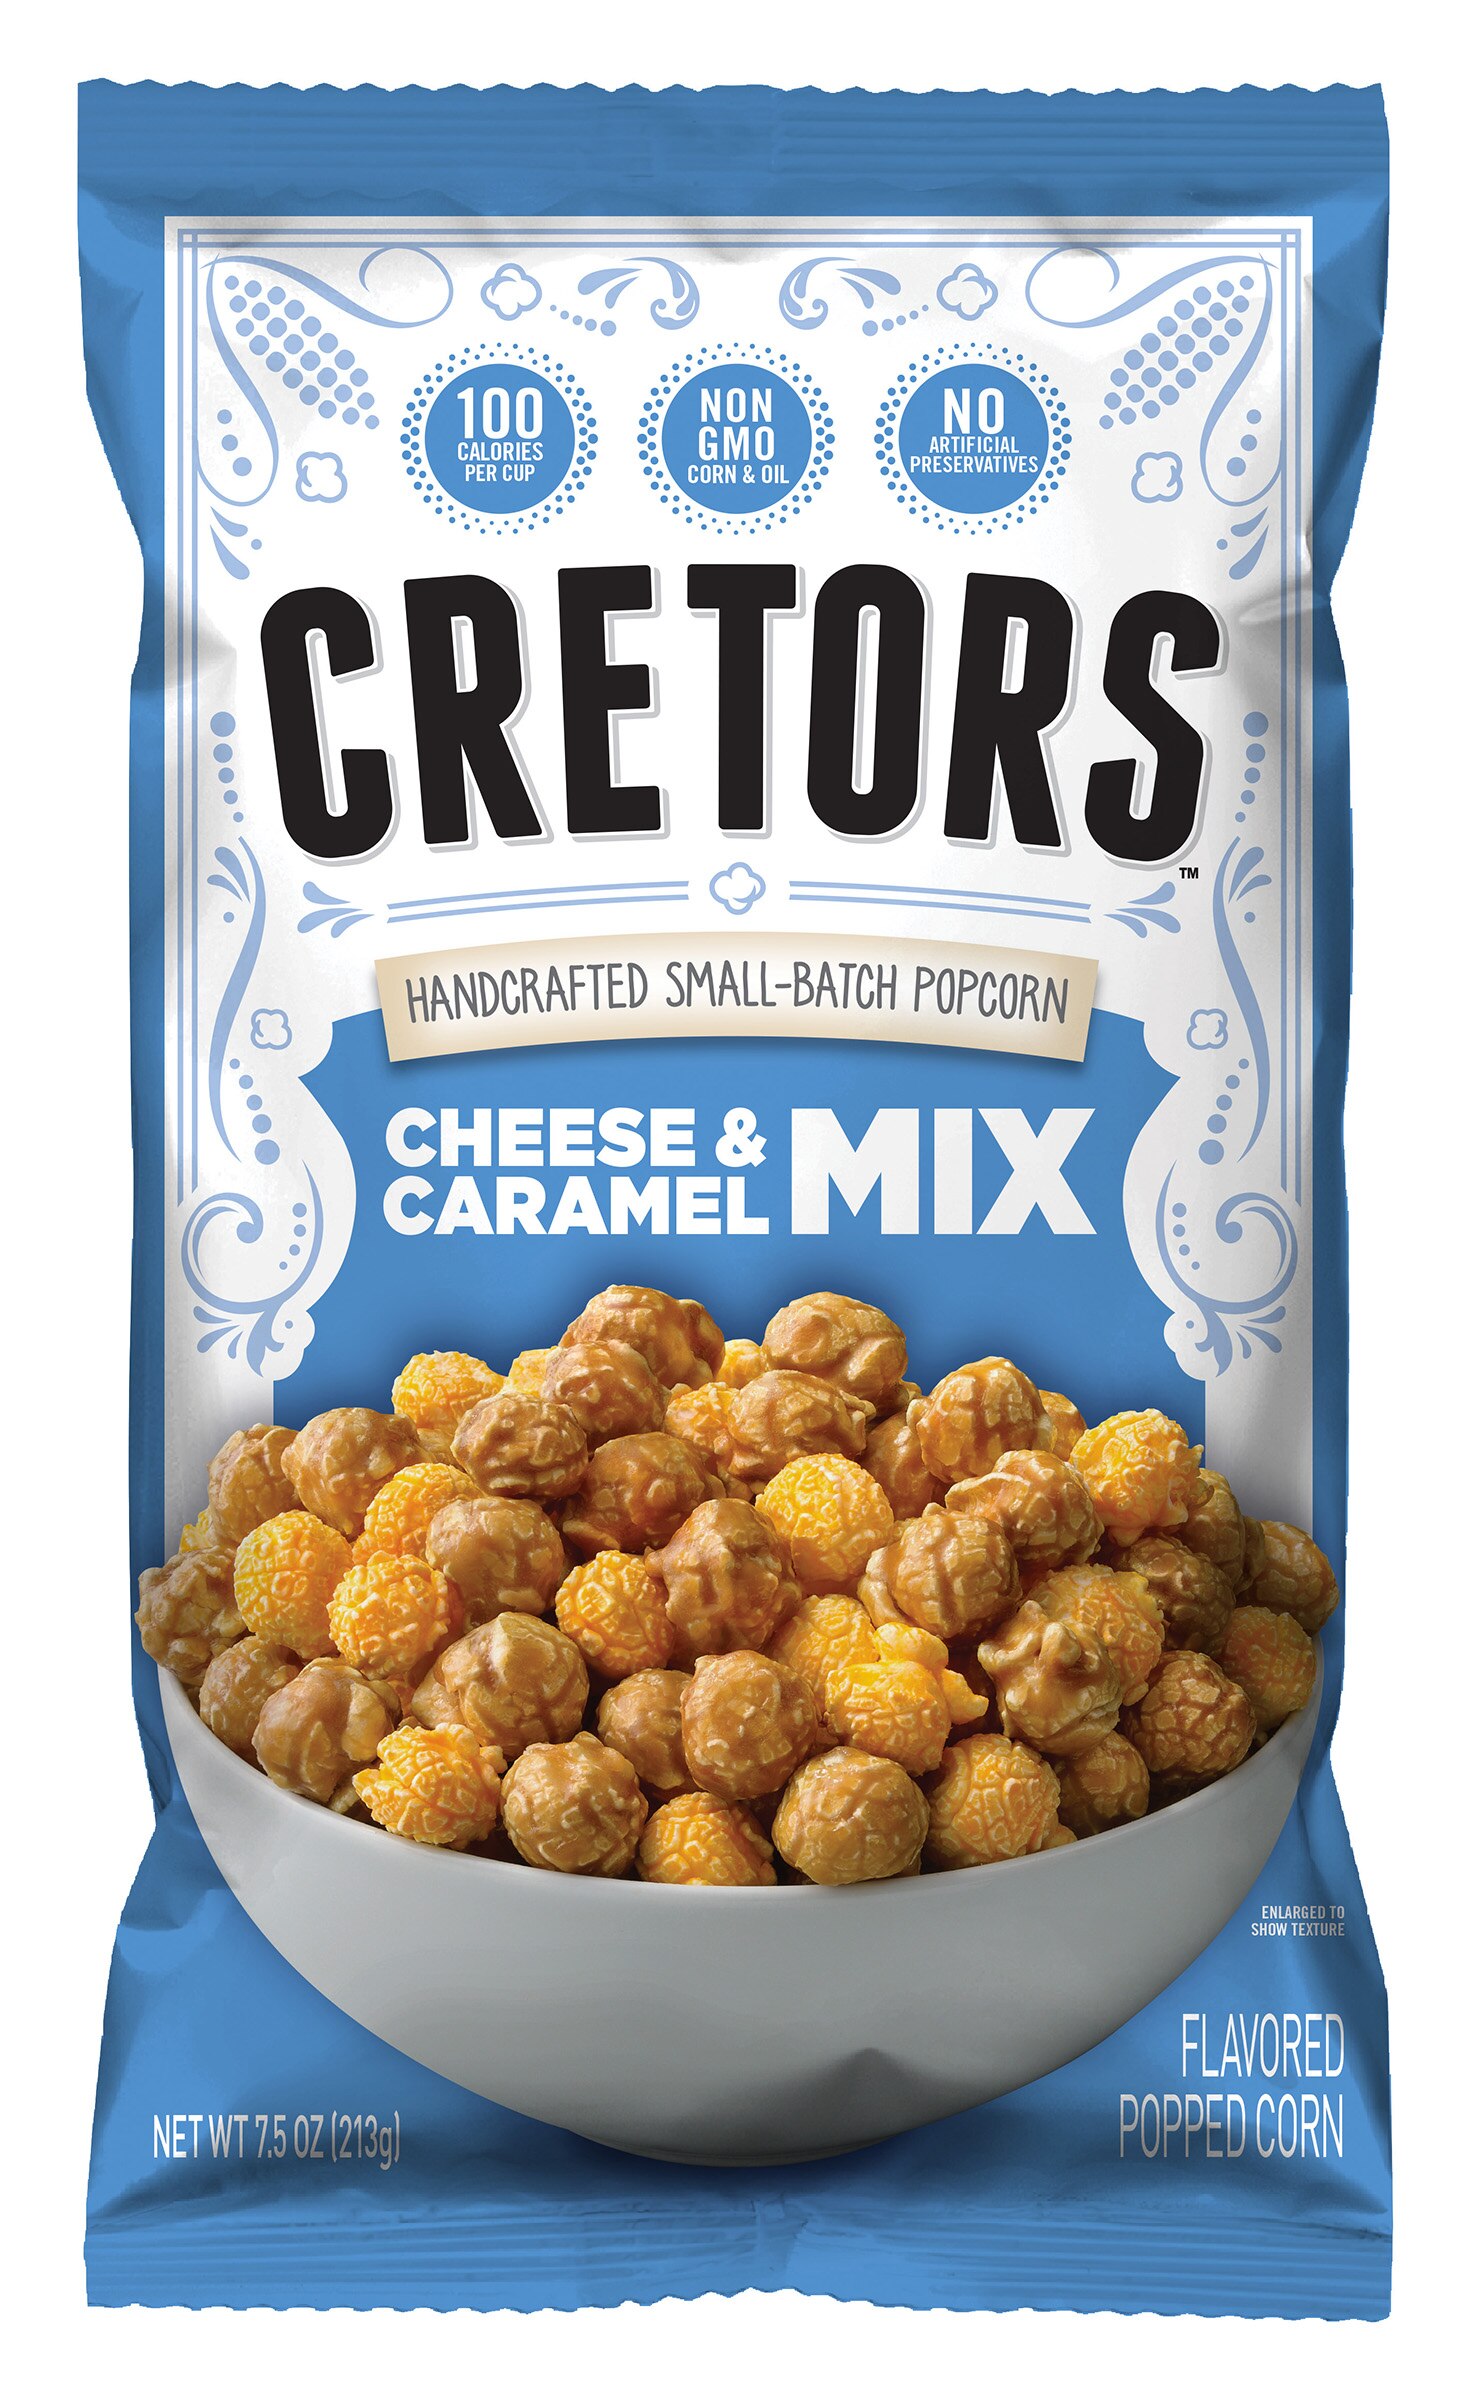 Cretors Cheese & Caramel Mix Flavored Popcorn, 7.5 oz